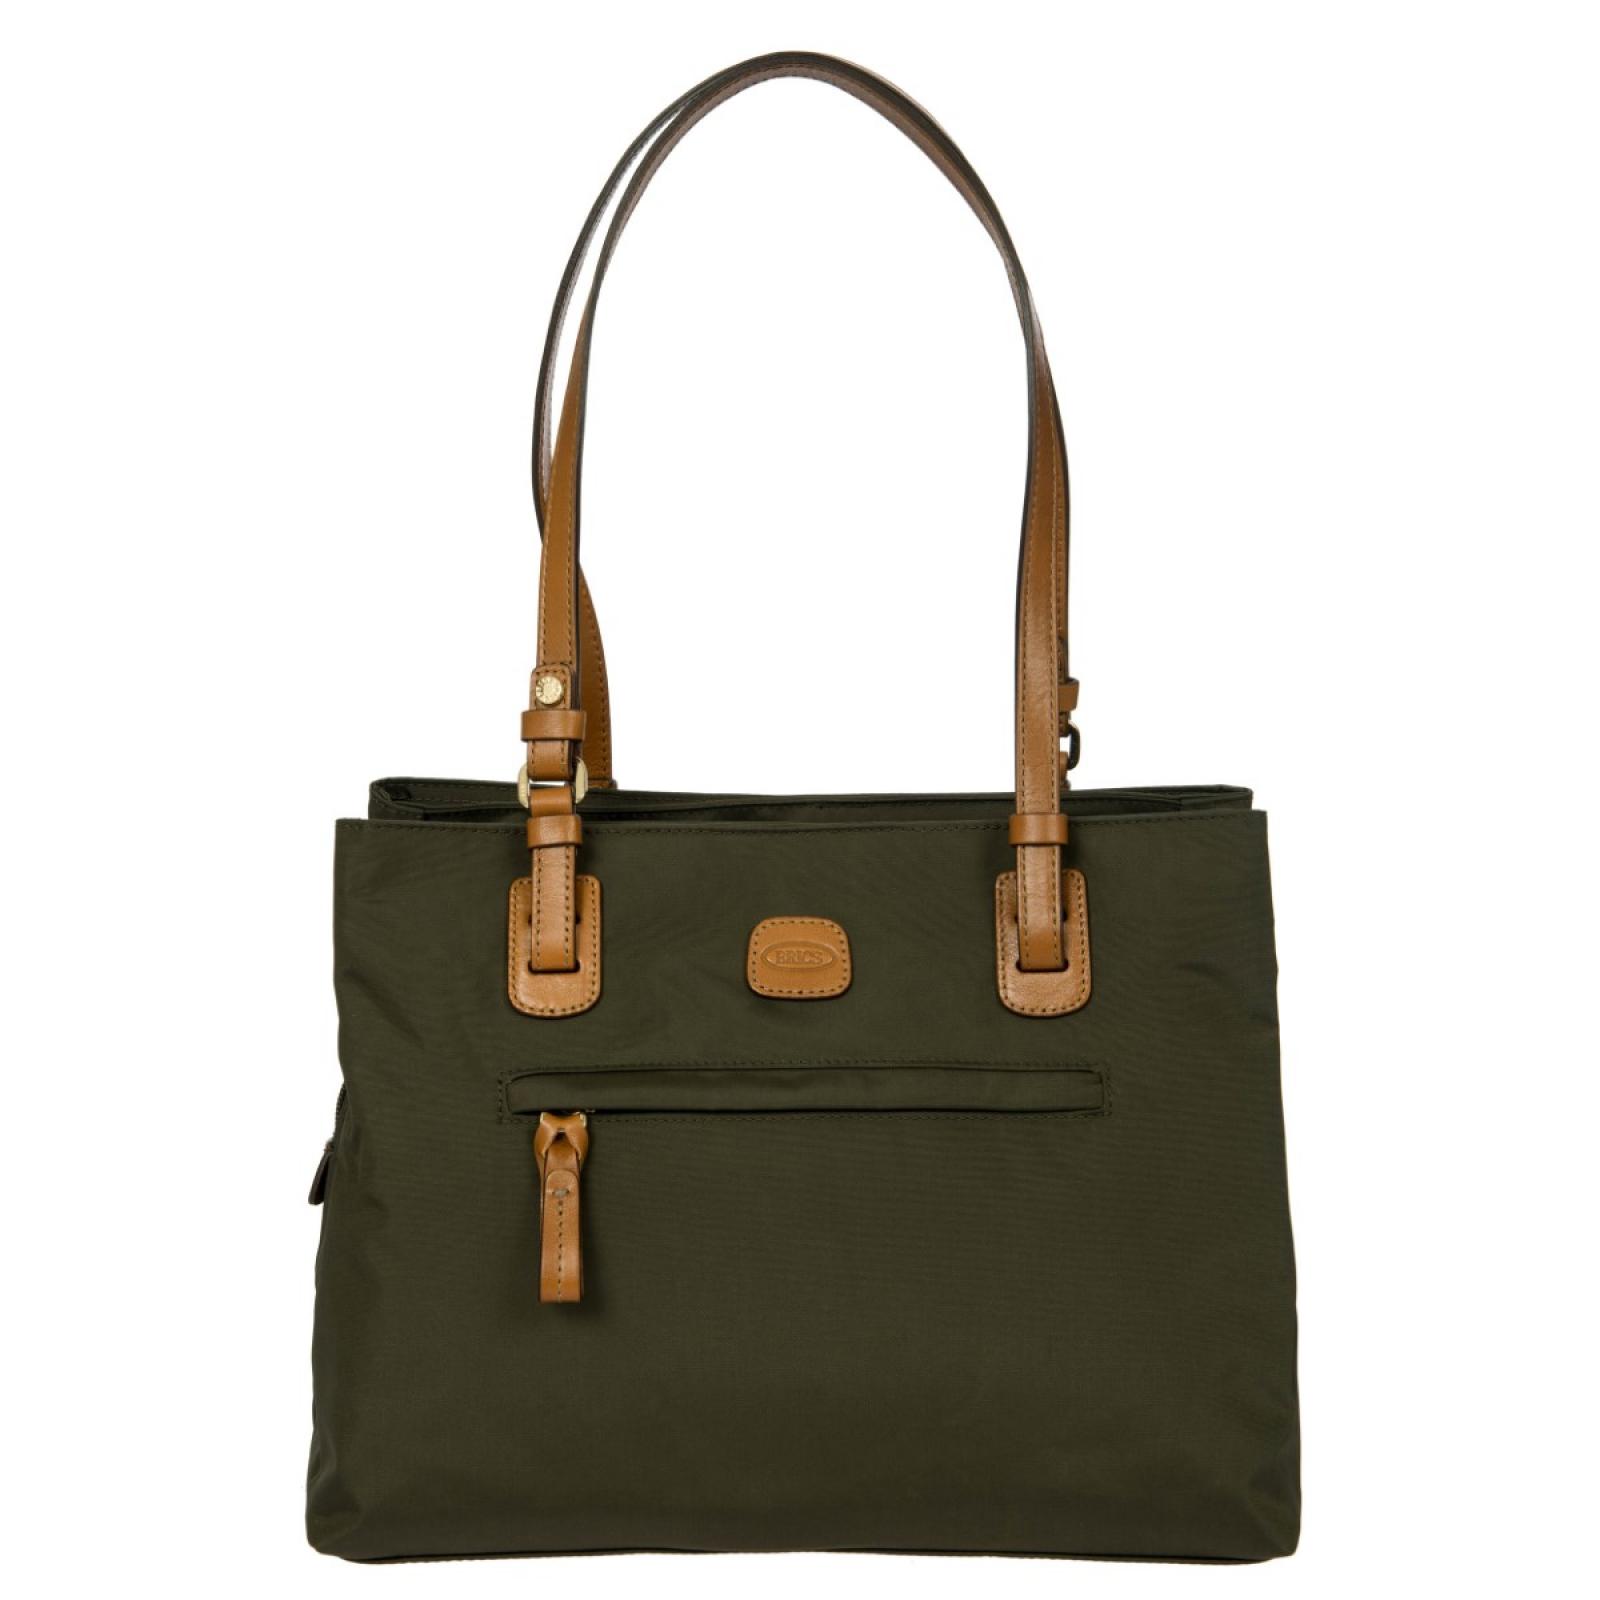 Bric's X-Bag medium Shopper Bag - 